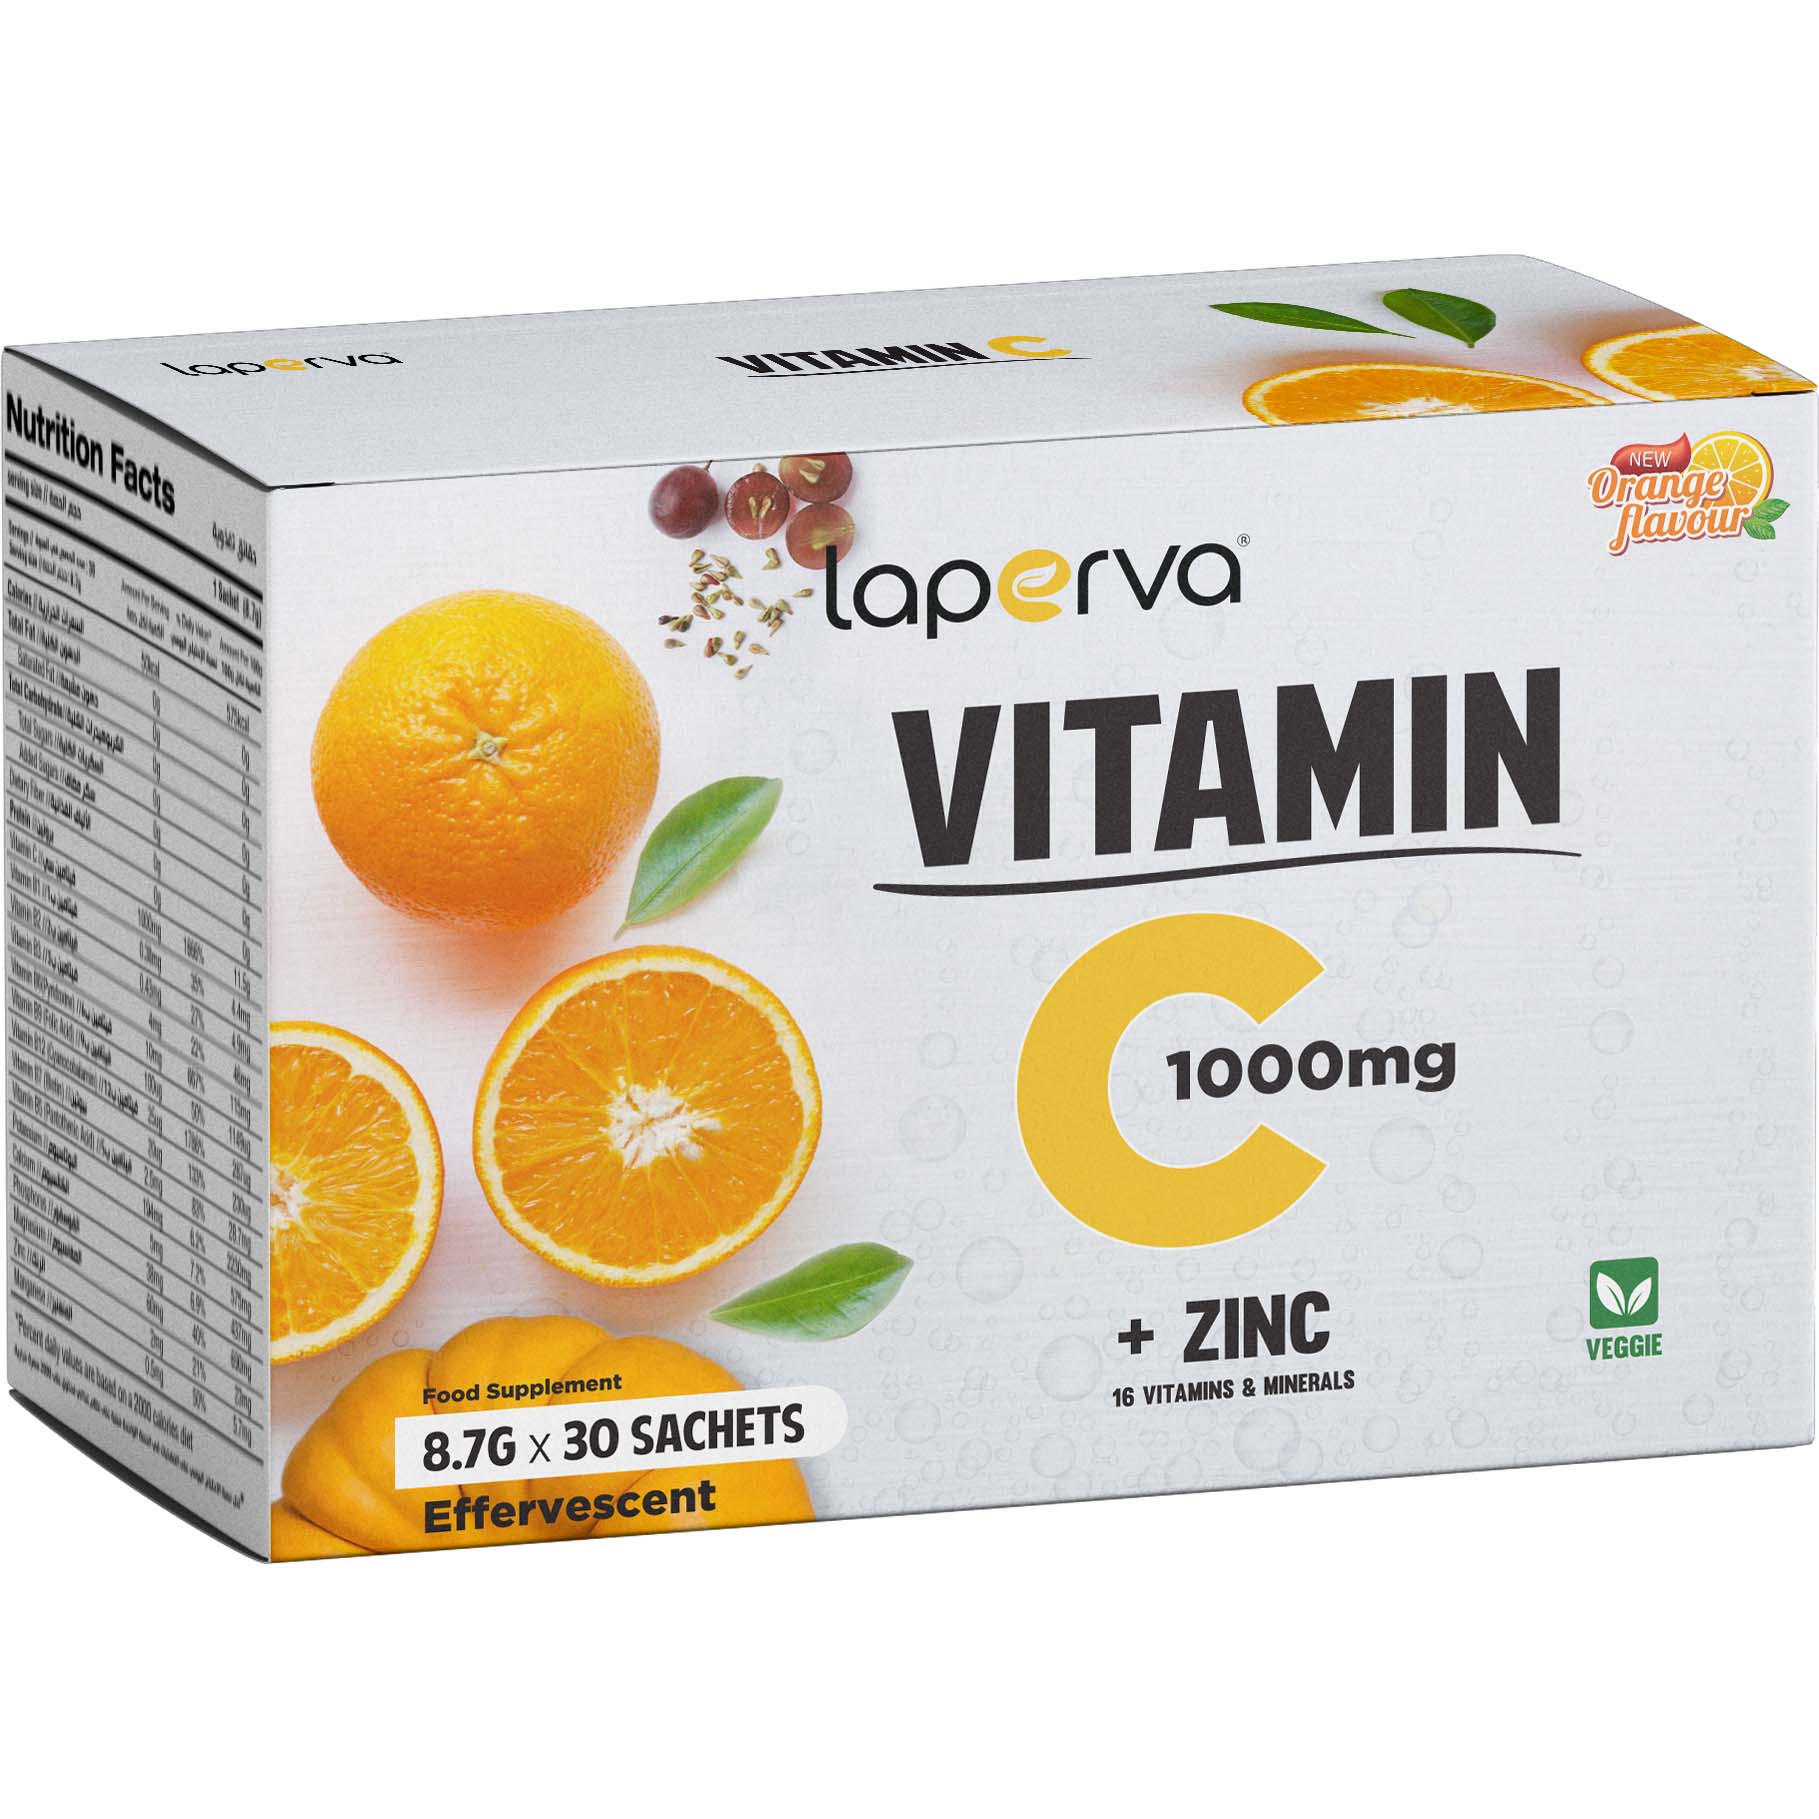 Laperva Vitamin C Plus Zinc Drink 30 Sachets Orange